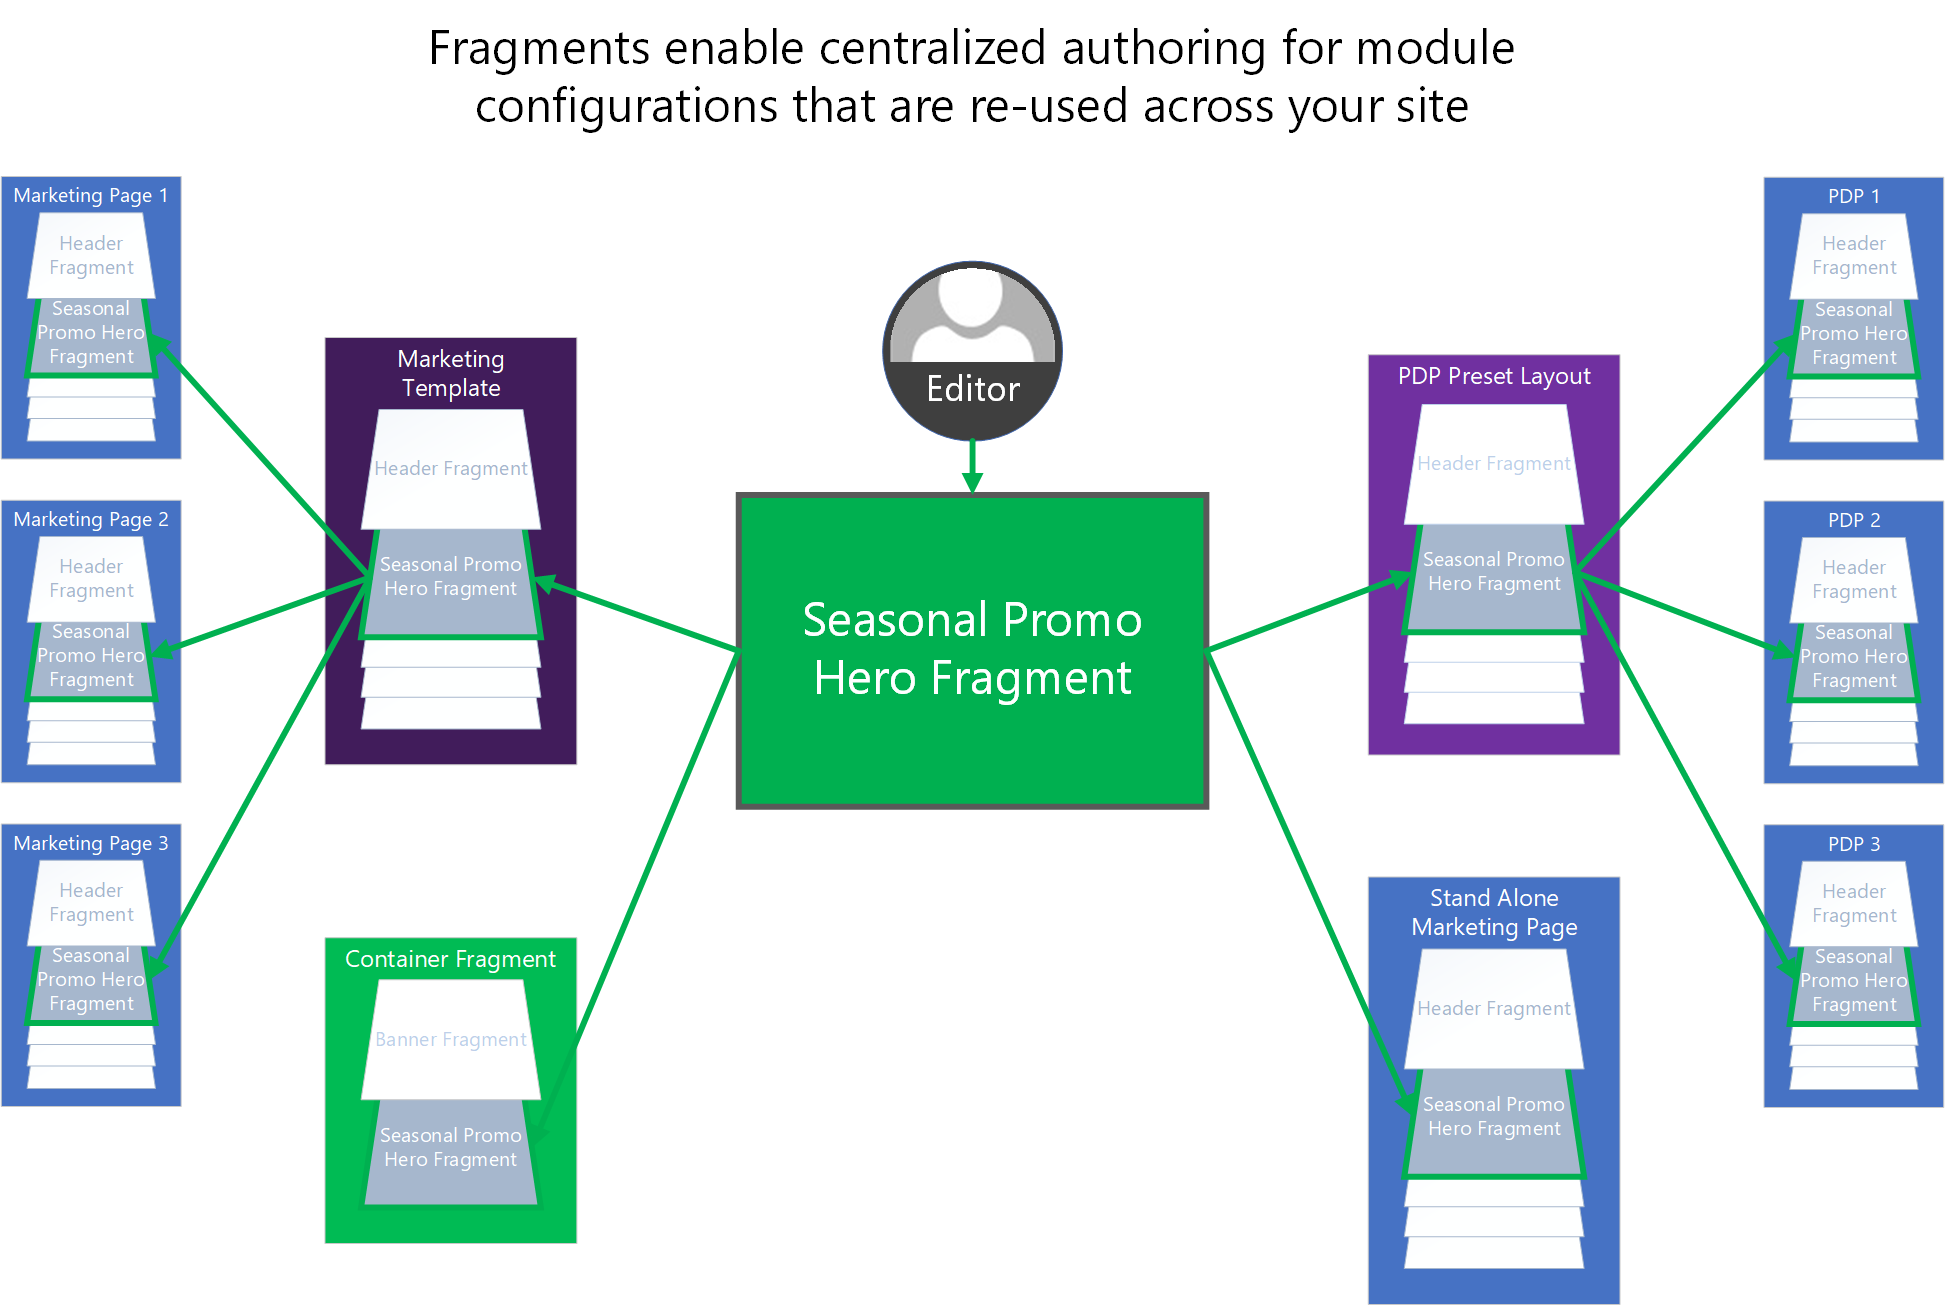 Na obrázku je znázorněno, jak lze fragmenty použít k centralizaci vytváření konfigurací sdílených modulů v rámci webu e-Commerce..